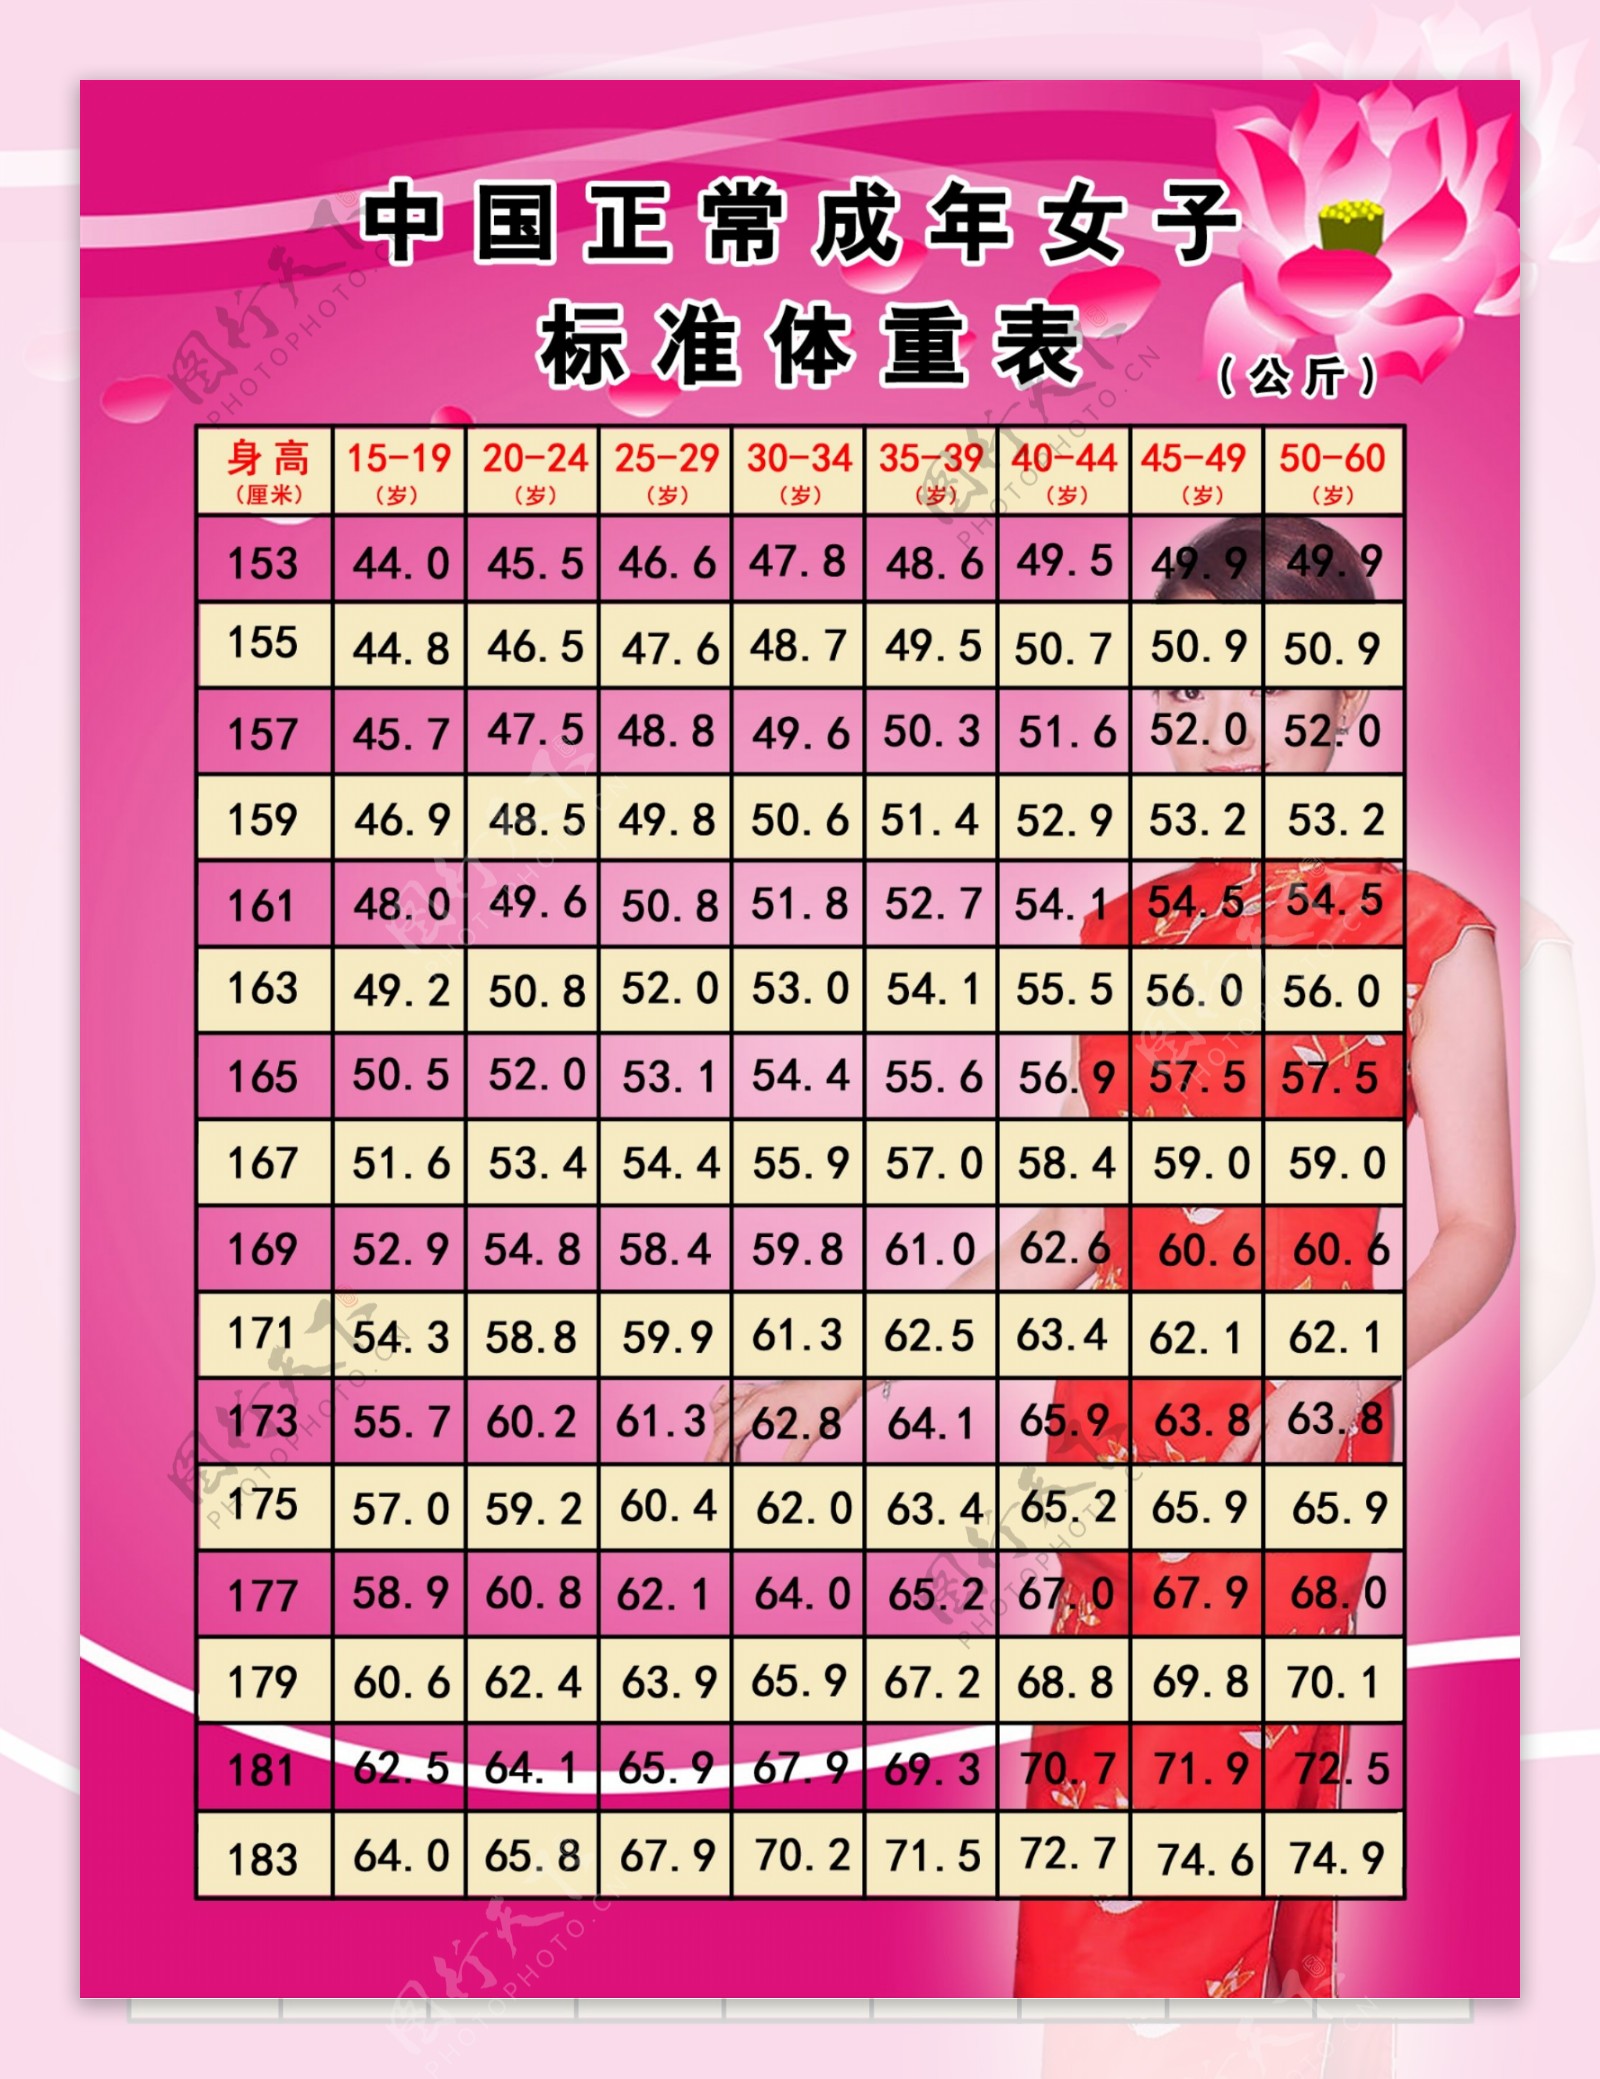 中国正常女子标准体重表